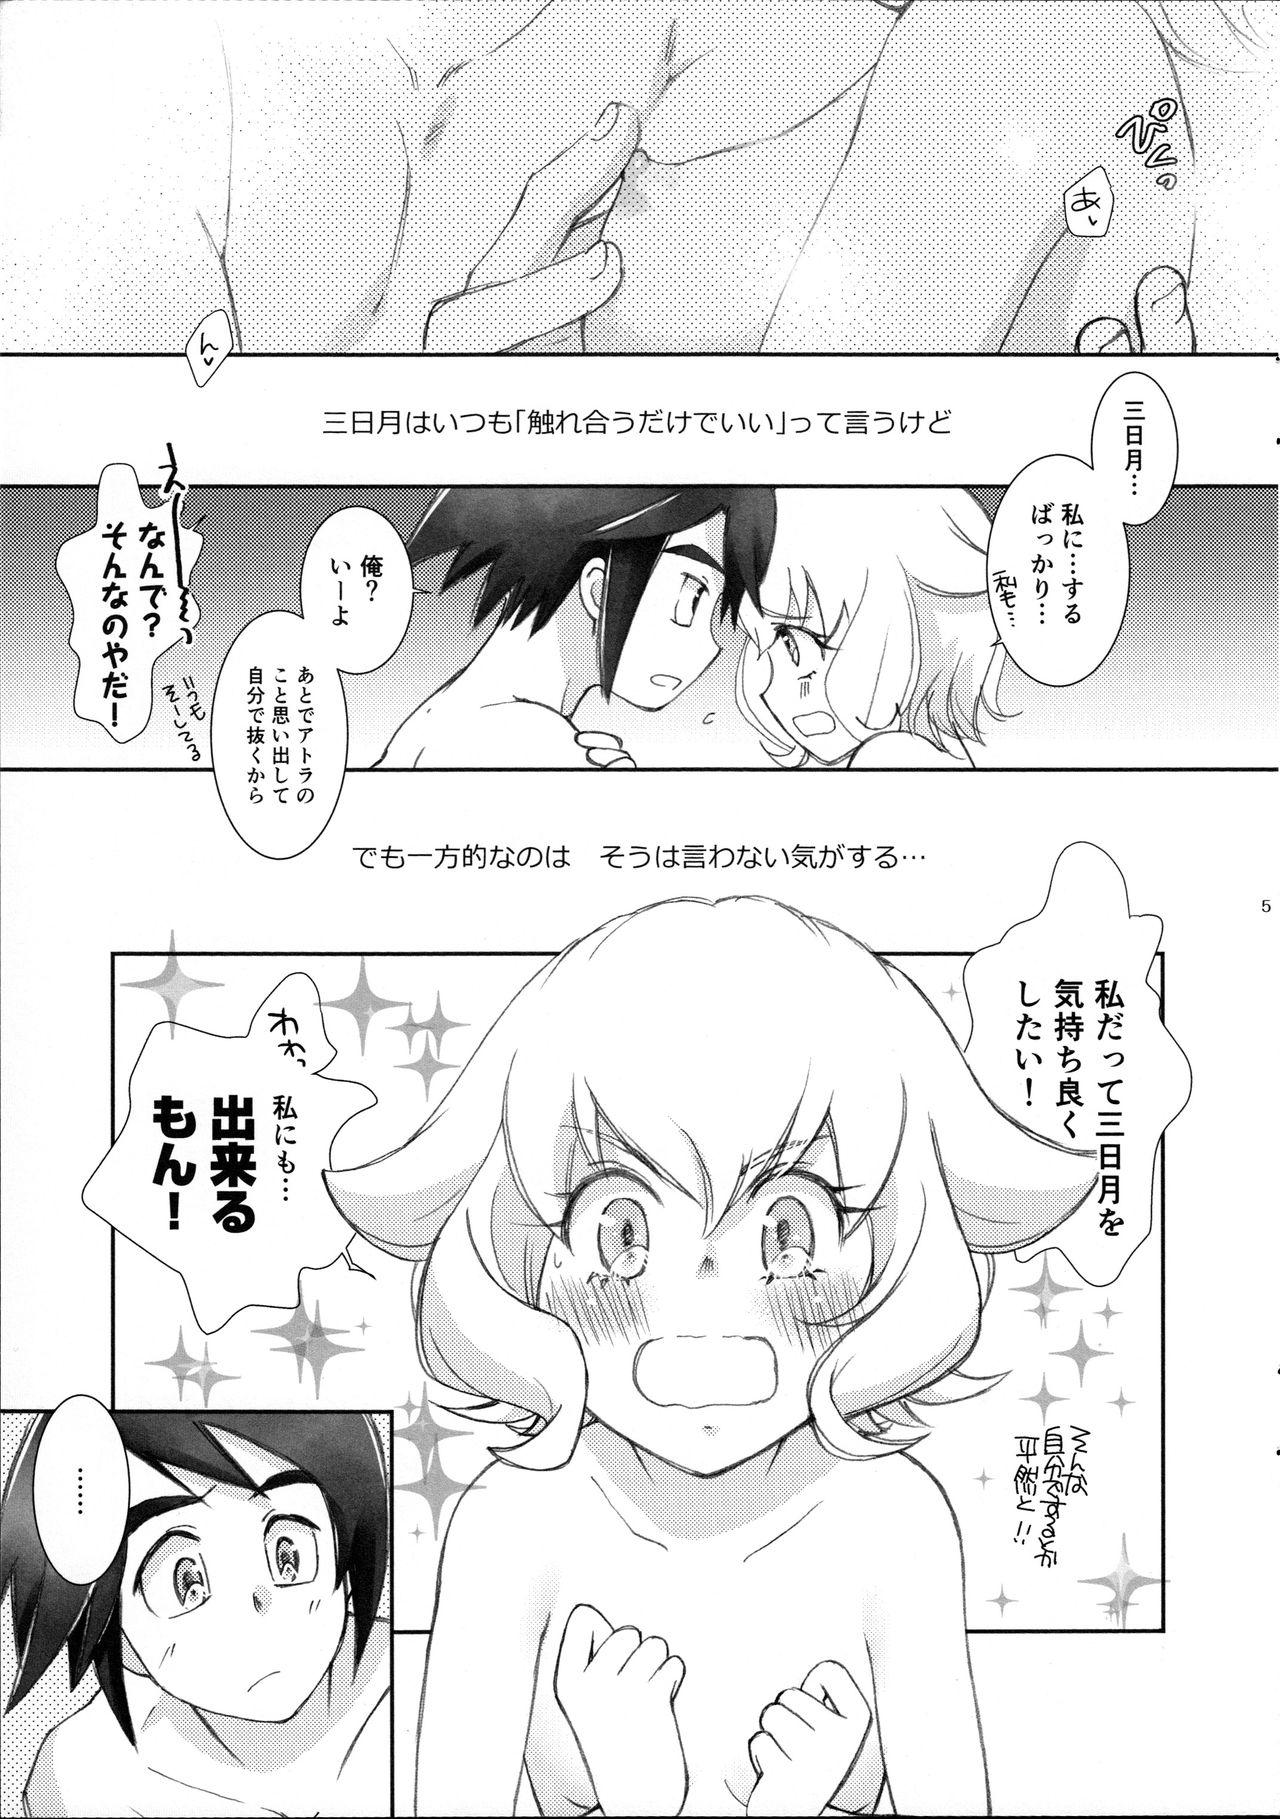 Body Mikazuki wa Itsumo Saigomade Shinai - Mobile suit gundam tekketsu no orphans Flaca - Page 4